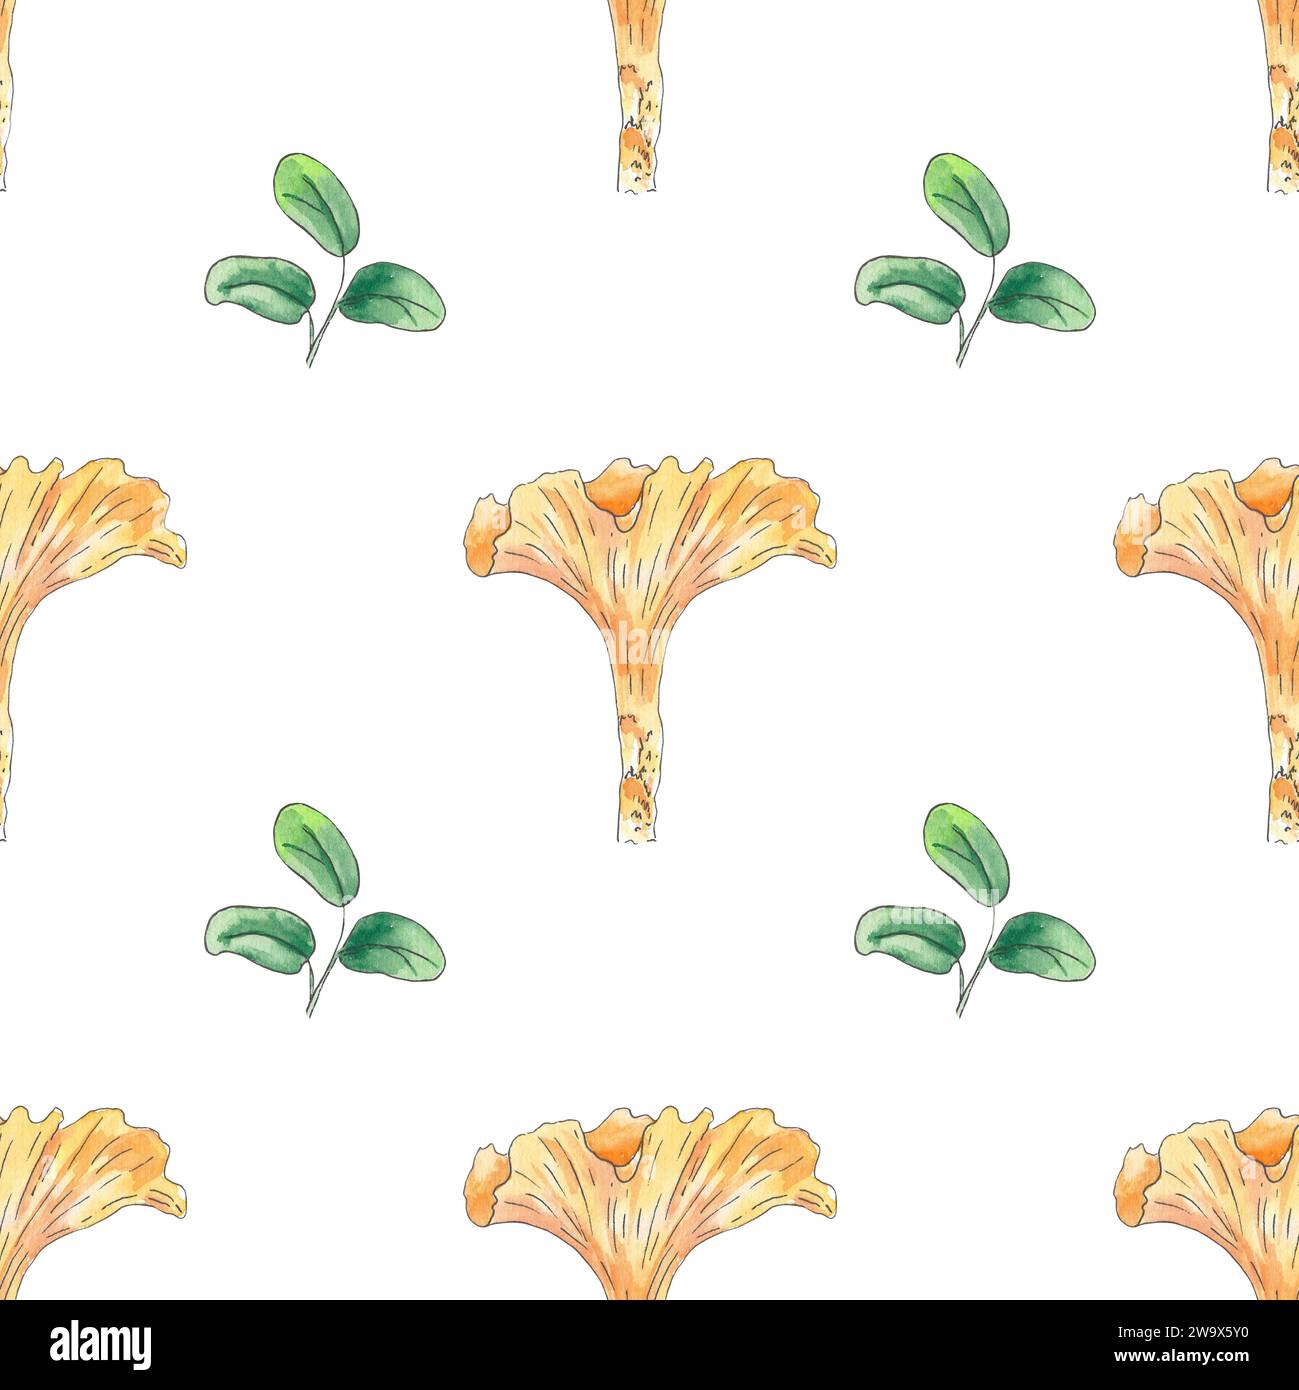 Chanterelle de champignon à motif aquarelle sans couture, feuilles dessinées à la main dans un style botanique. Illustration d'art pour la création de logos, textiles, cartes, menus Banque D'Images